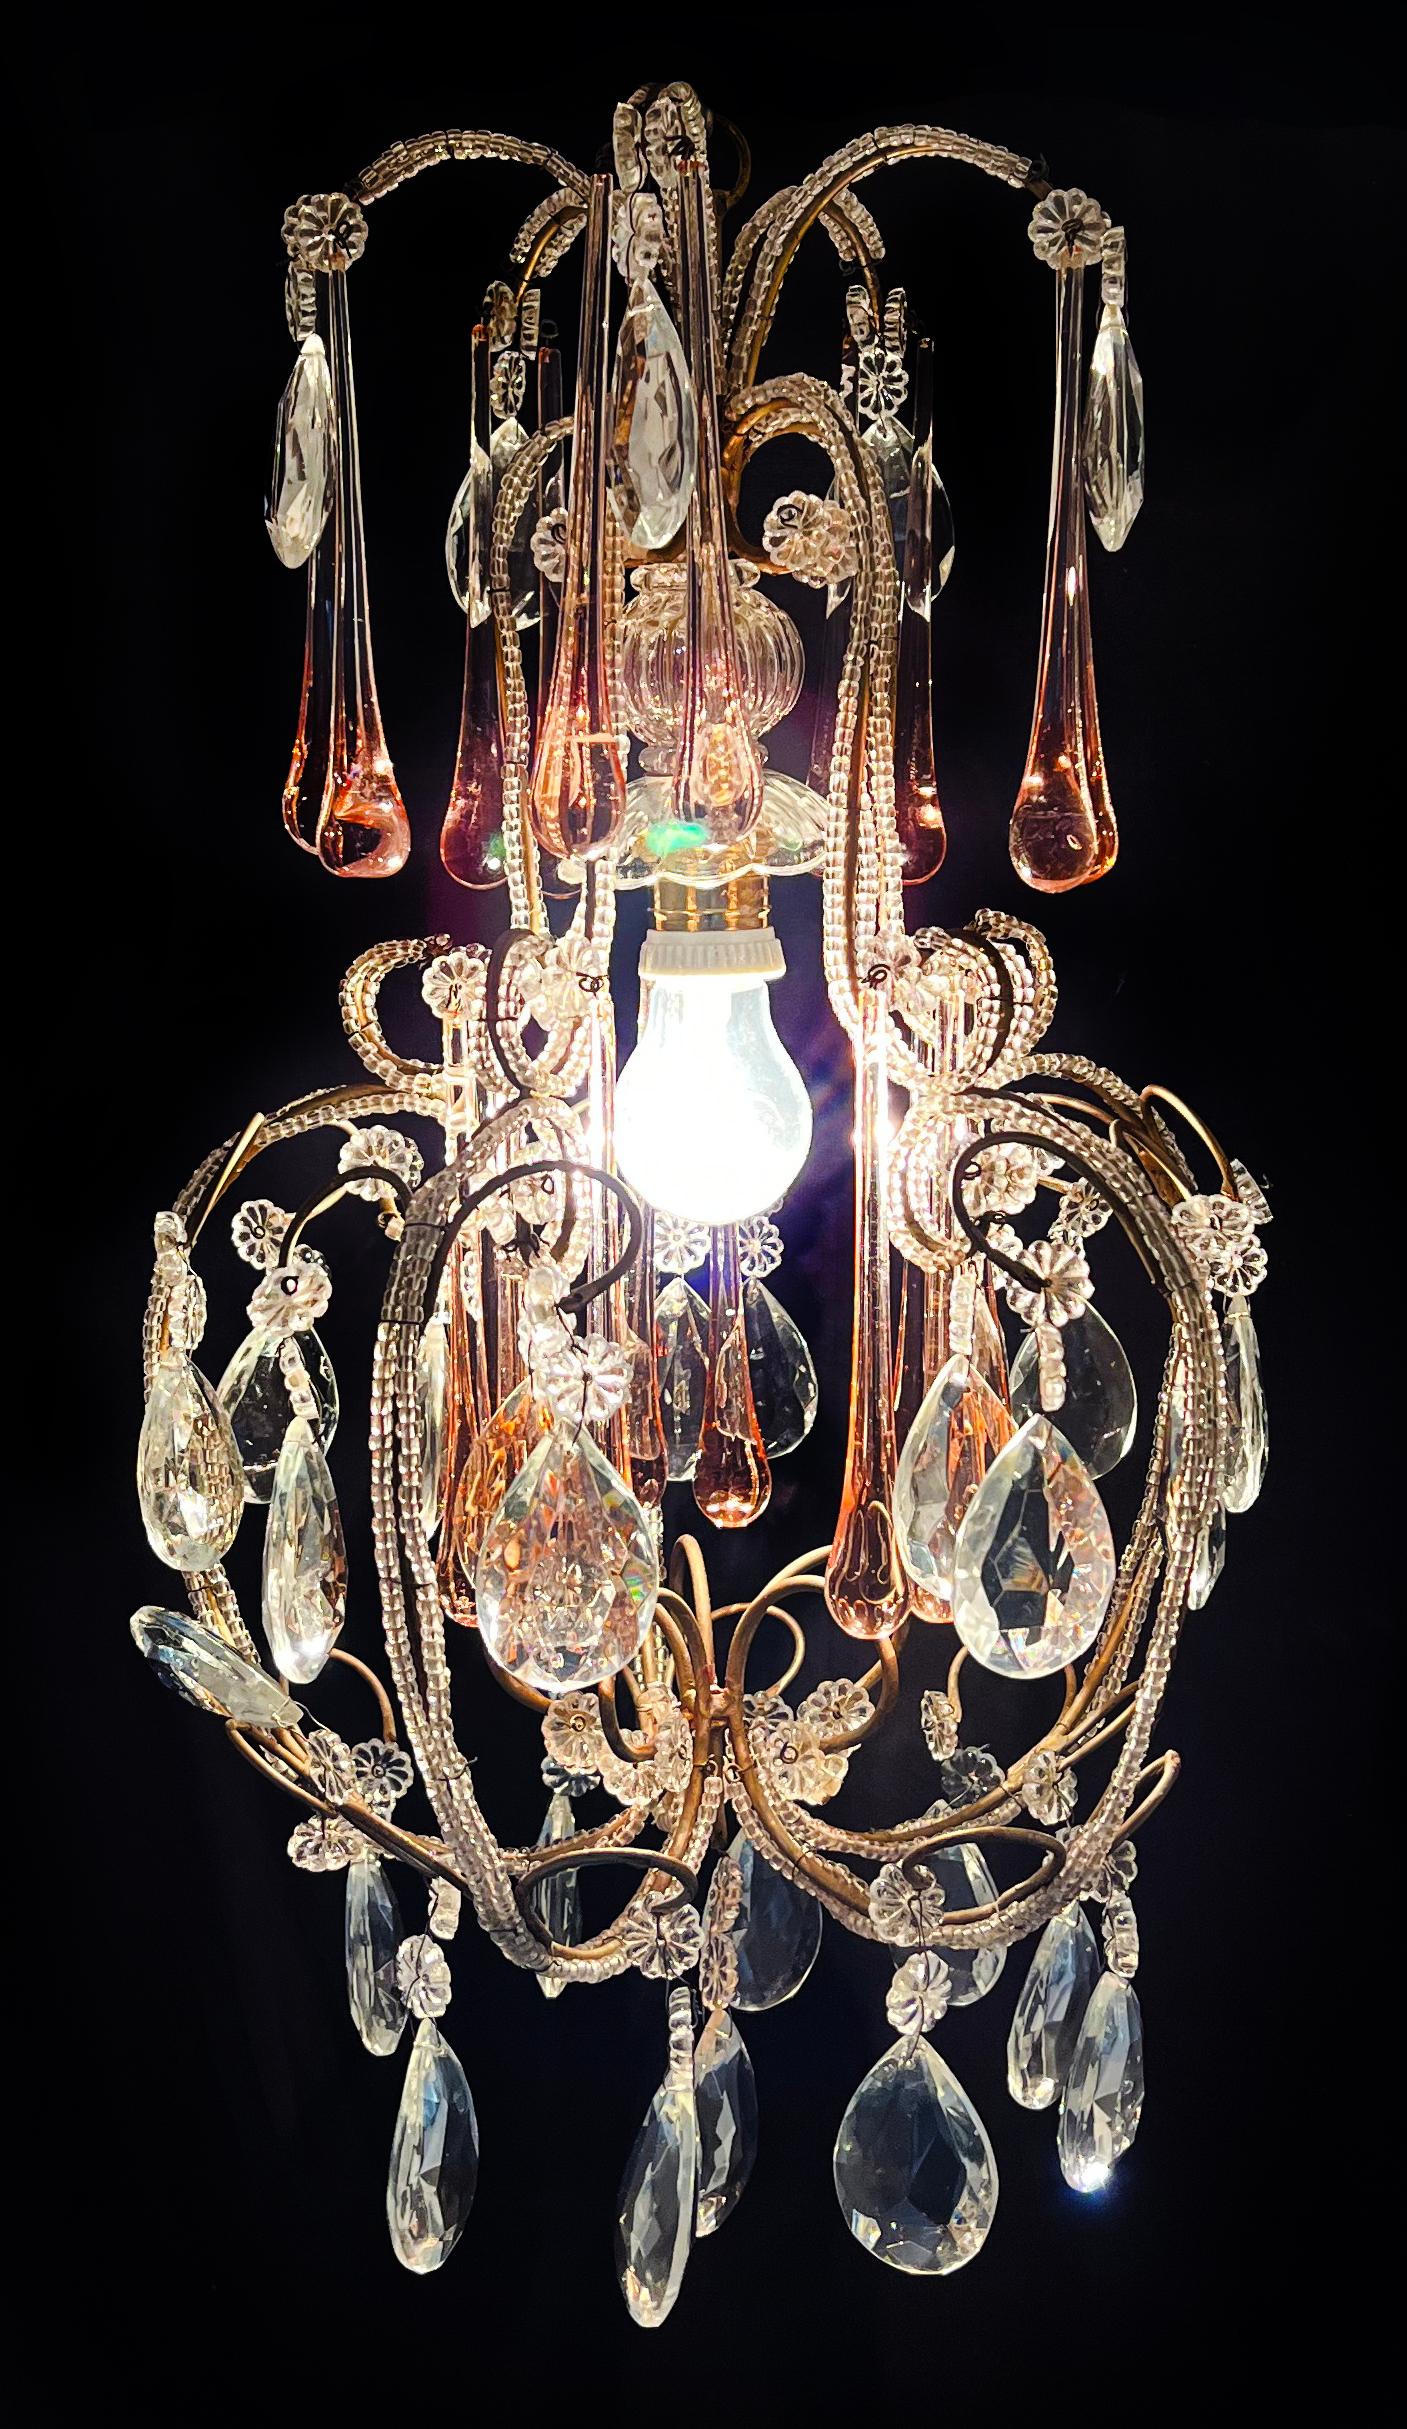 Faszinierender Murano-Kronleuchter, der der göttlichen Katharine Hepburn gewidmet ist.
Höhe 57 cm, Durchmesser 32 cm. Eine Leuchte E27